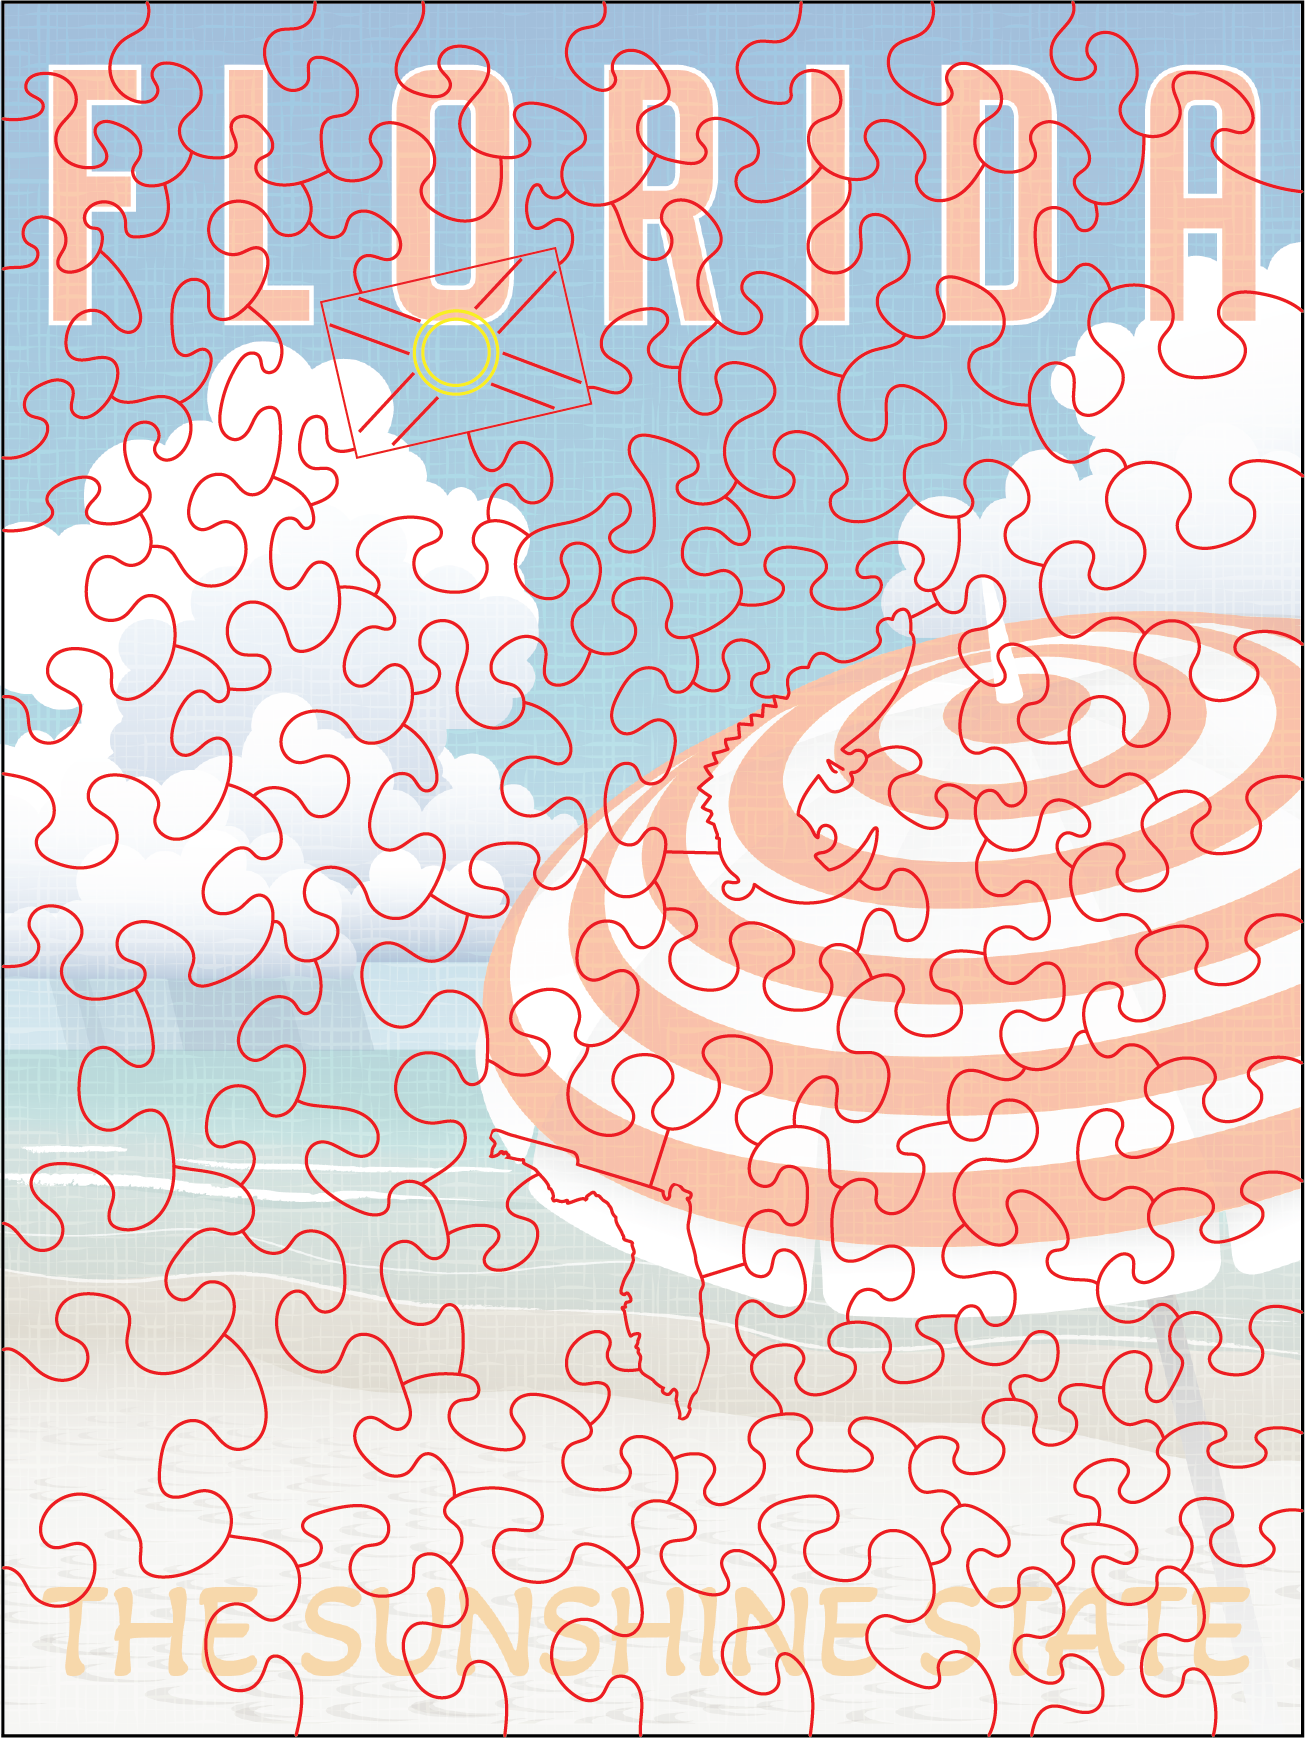 Florida Poster